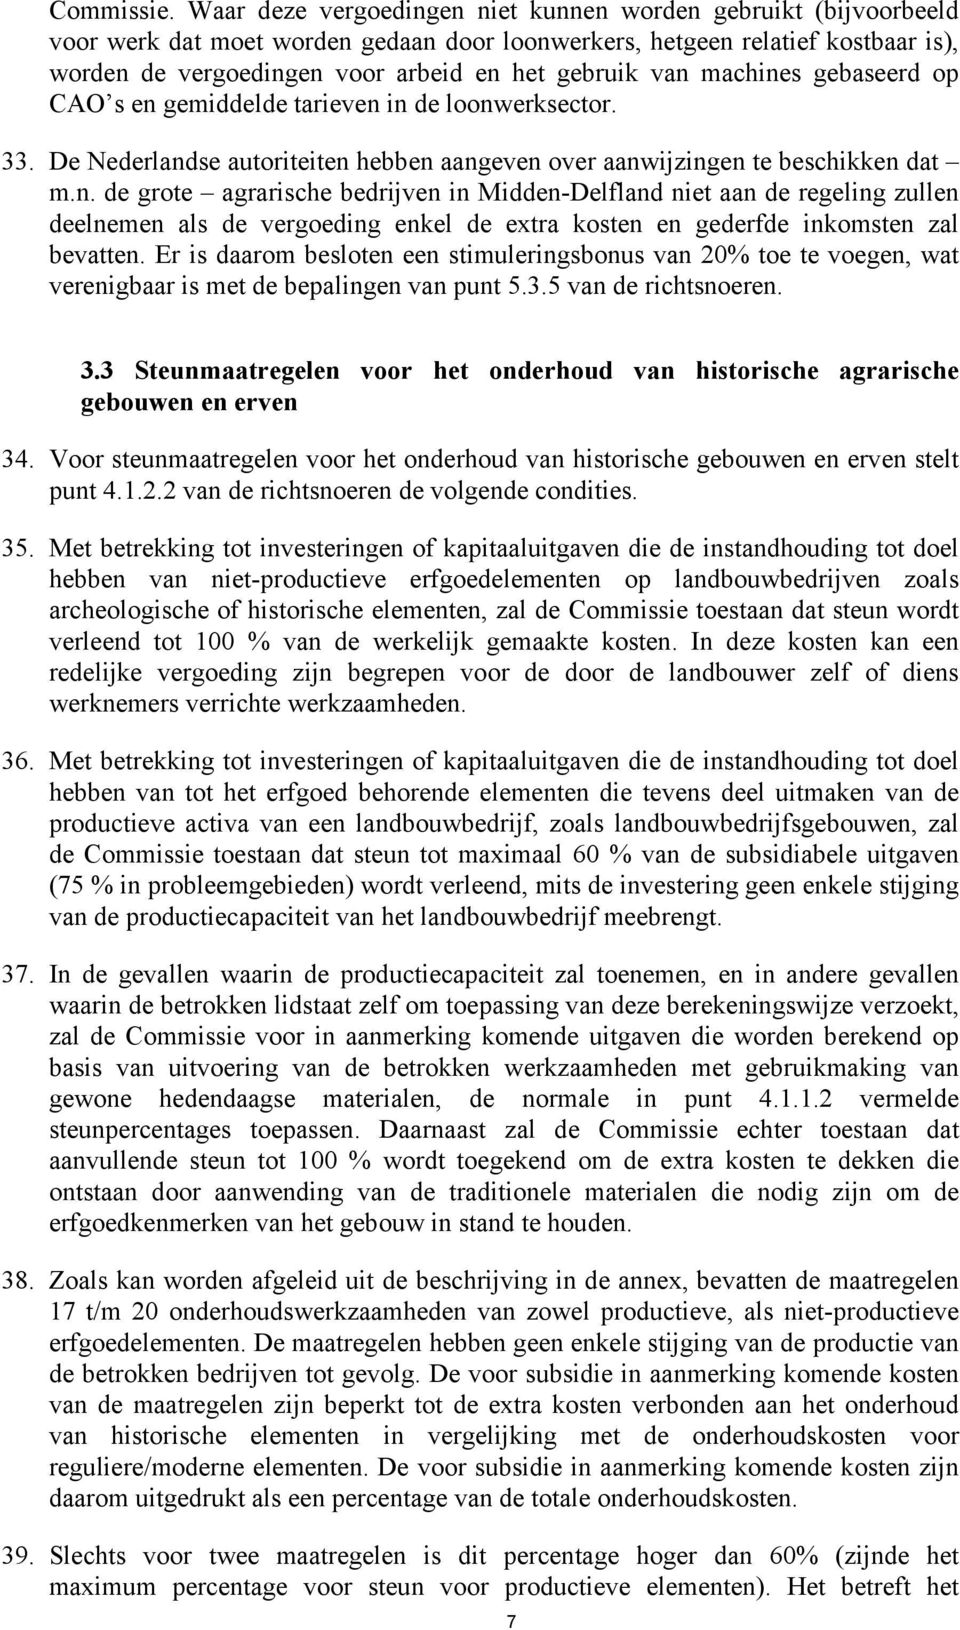 van machines gebaseerd op CAO s en gemiddelde tarieven in de loonwerksector. 33. De Nederlandse autoriteiten hebben aangeven over aanwijzingen te beschikken dat m.n. de grote agrarische bedrijven in Midden-Delfland niet aan de regeling zullen deelnemen als de vergoeding enkel de extra kosten en gederfde inkomsten zal bevatten.